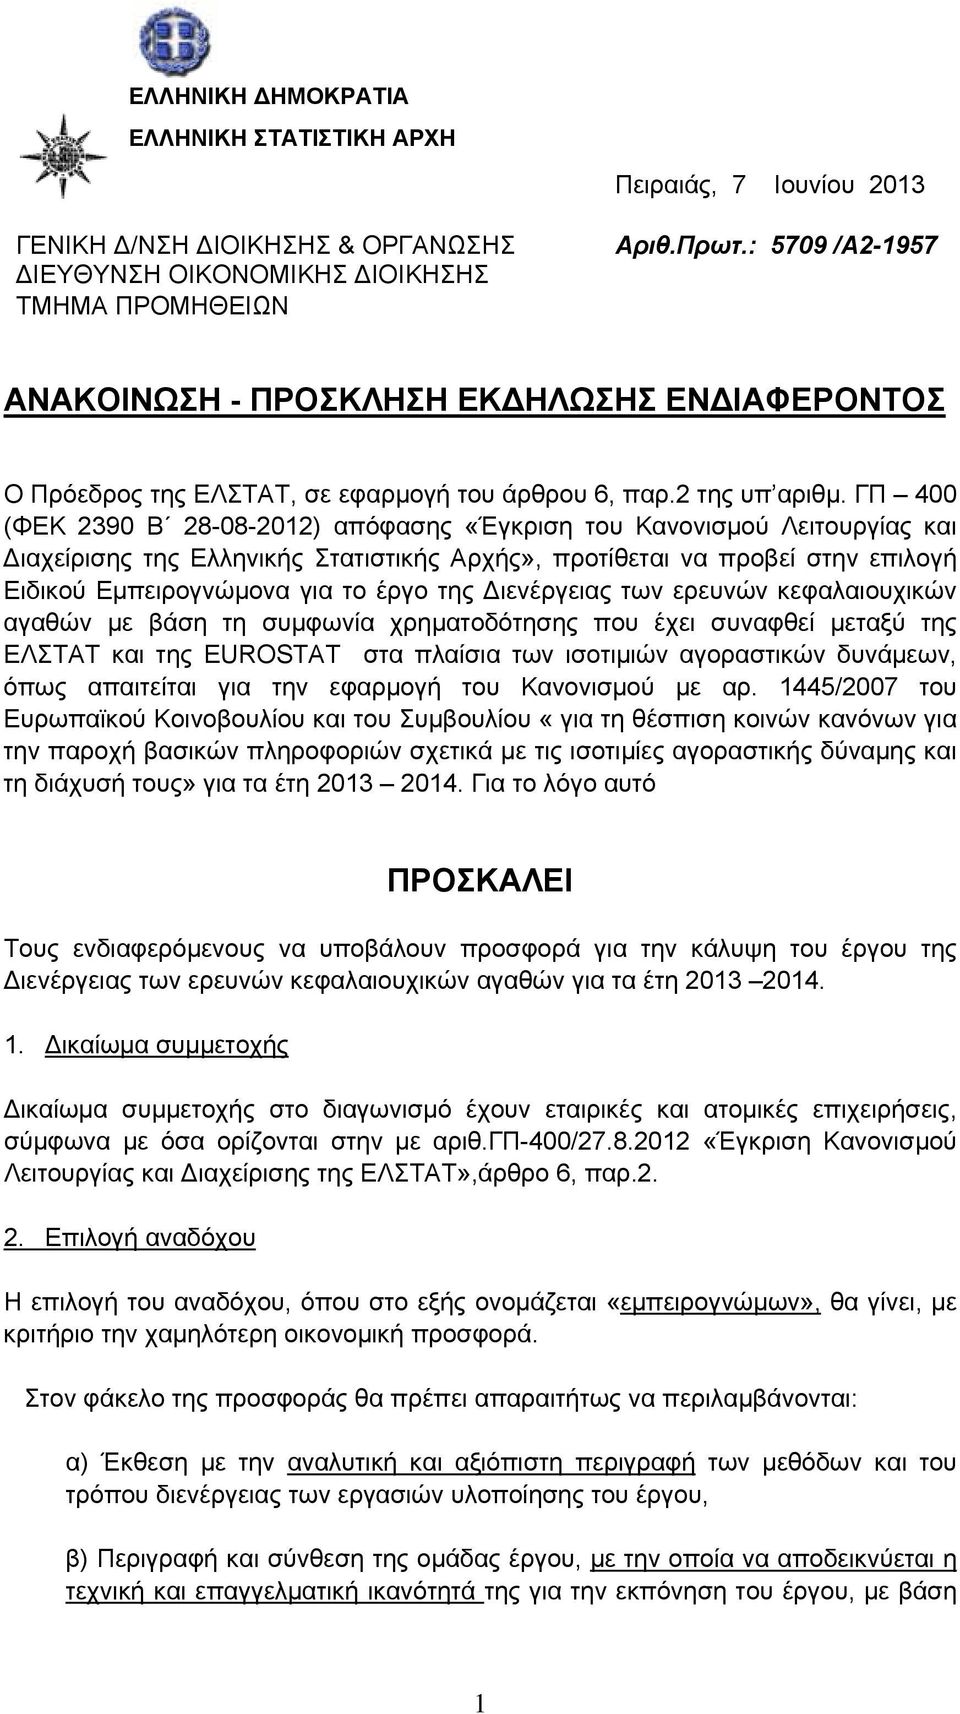 ΓΠ 400 (ΦΕΚ 2390 Β 28-08-2012) απόφασης «Έγκριση του Κανονισμού Λειτουργίας και Διαχείρισης της Ελληνικής Στατιστικής Αρχής», προτίθεται να προβεί στην επιλογή Ειδικού Εμπειρογνώμονα για το έργο της